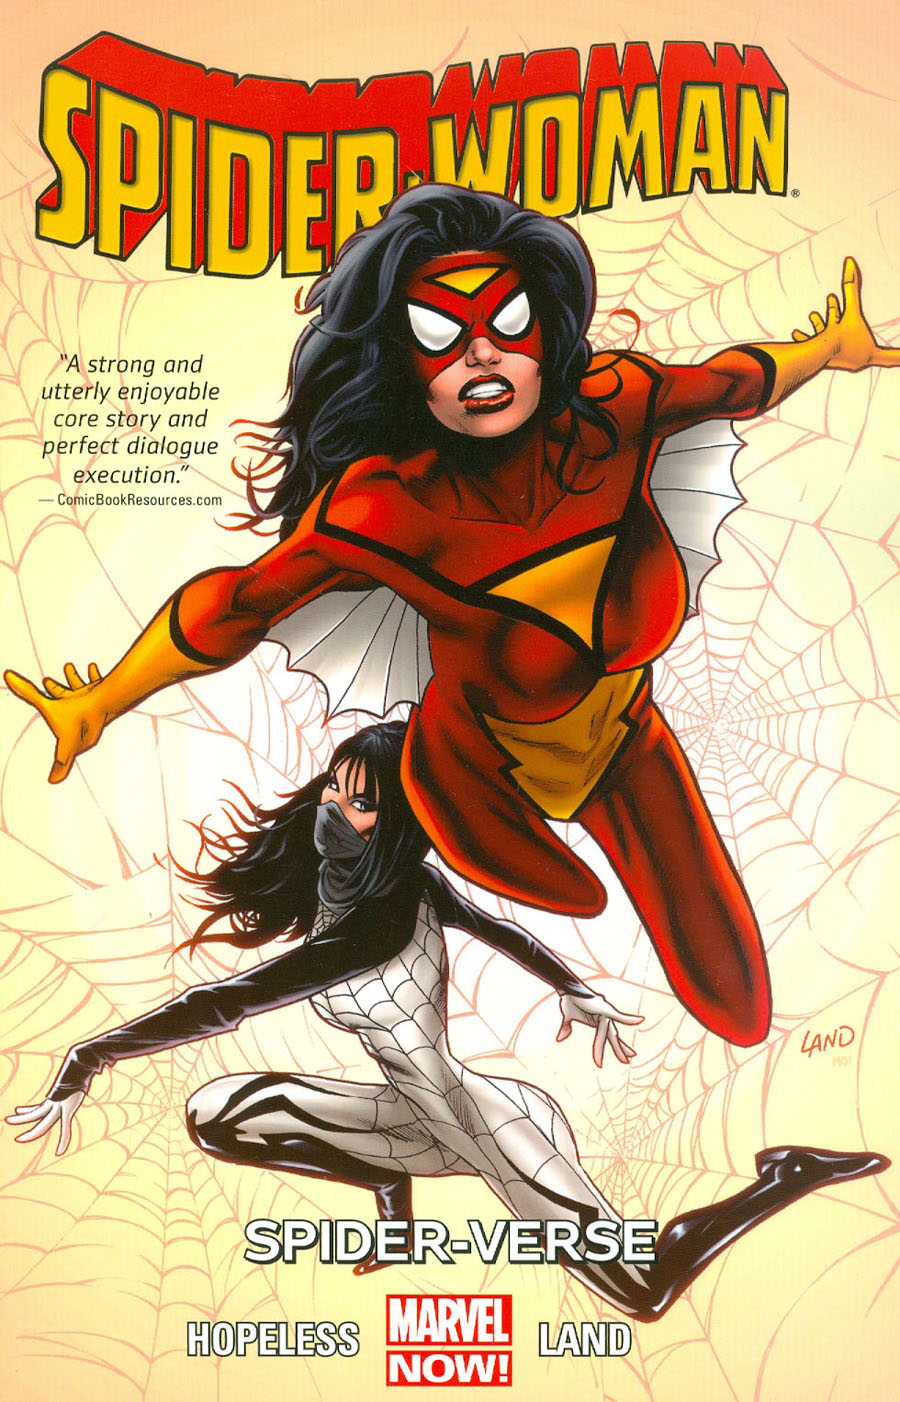 Spider-Woman (2014) Vol 1 Spider-Verse TP